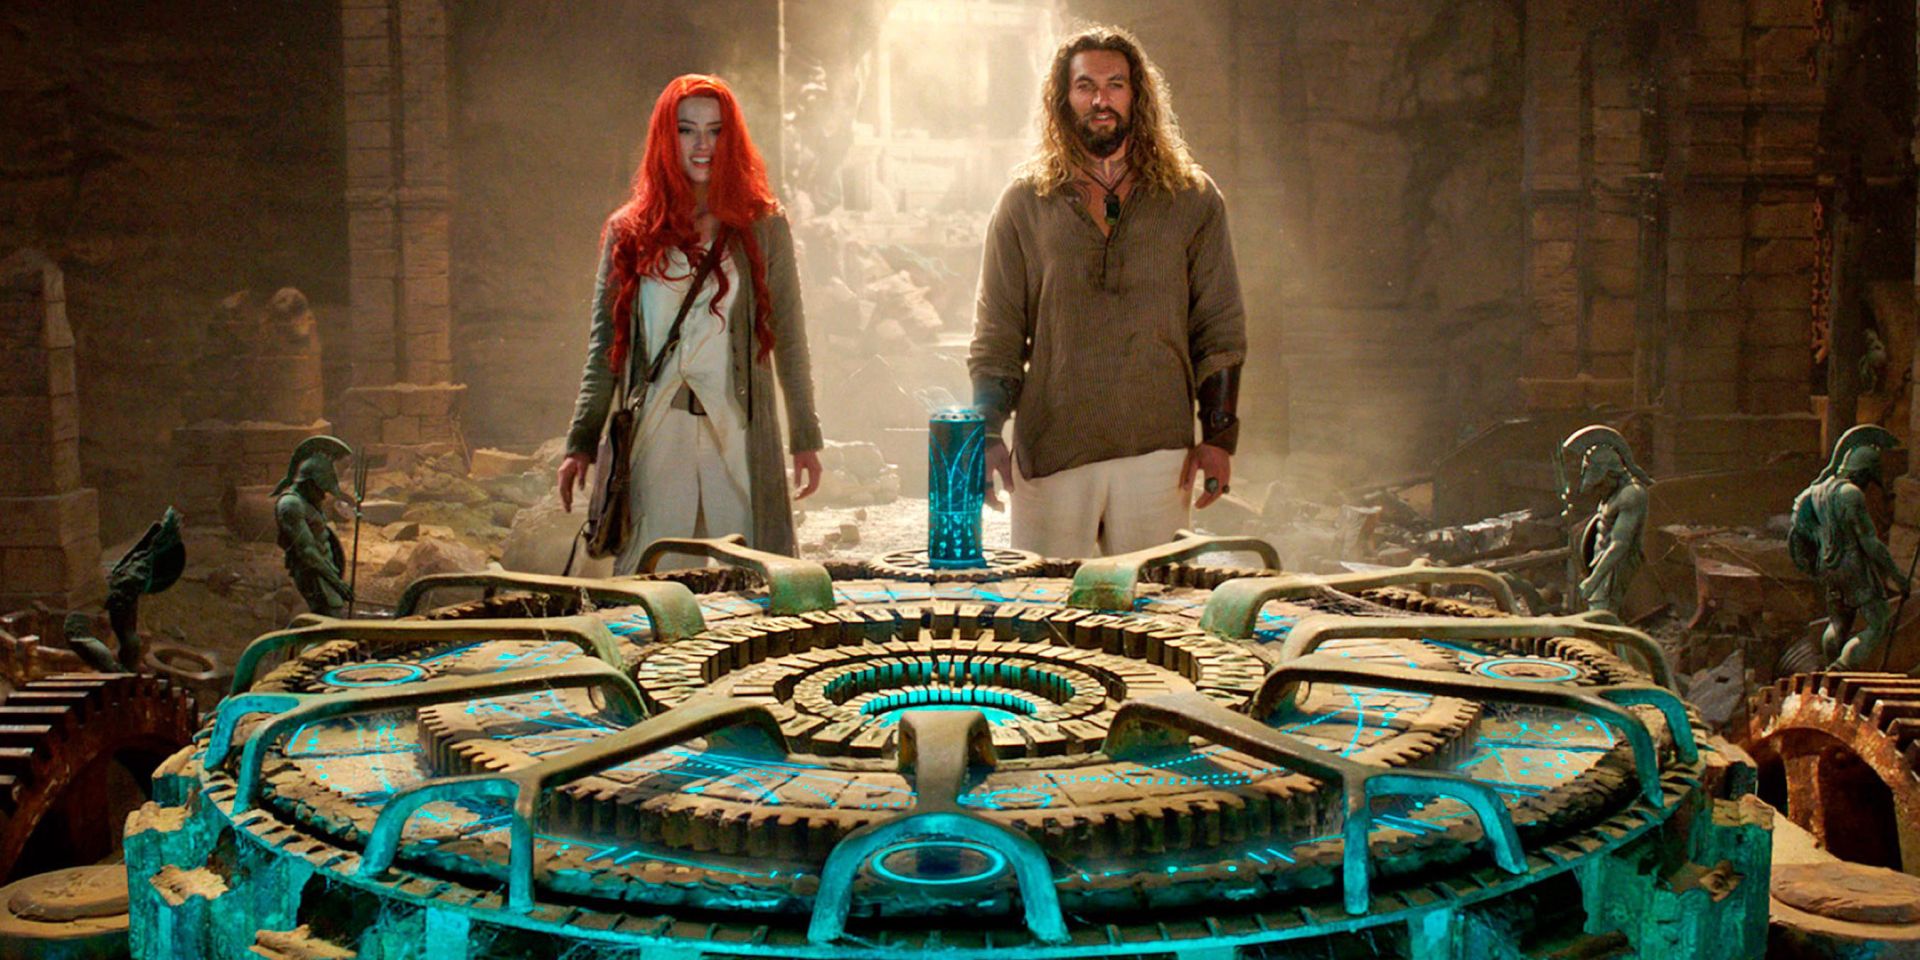 Artha and Mera explore a tomb in Aquaman